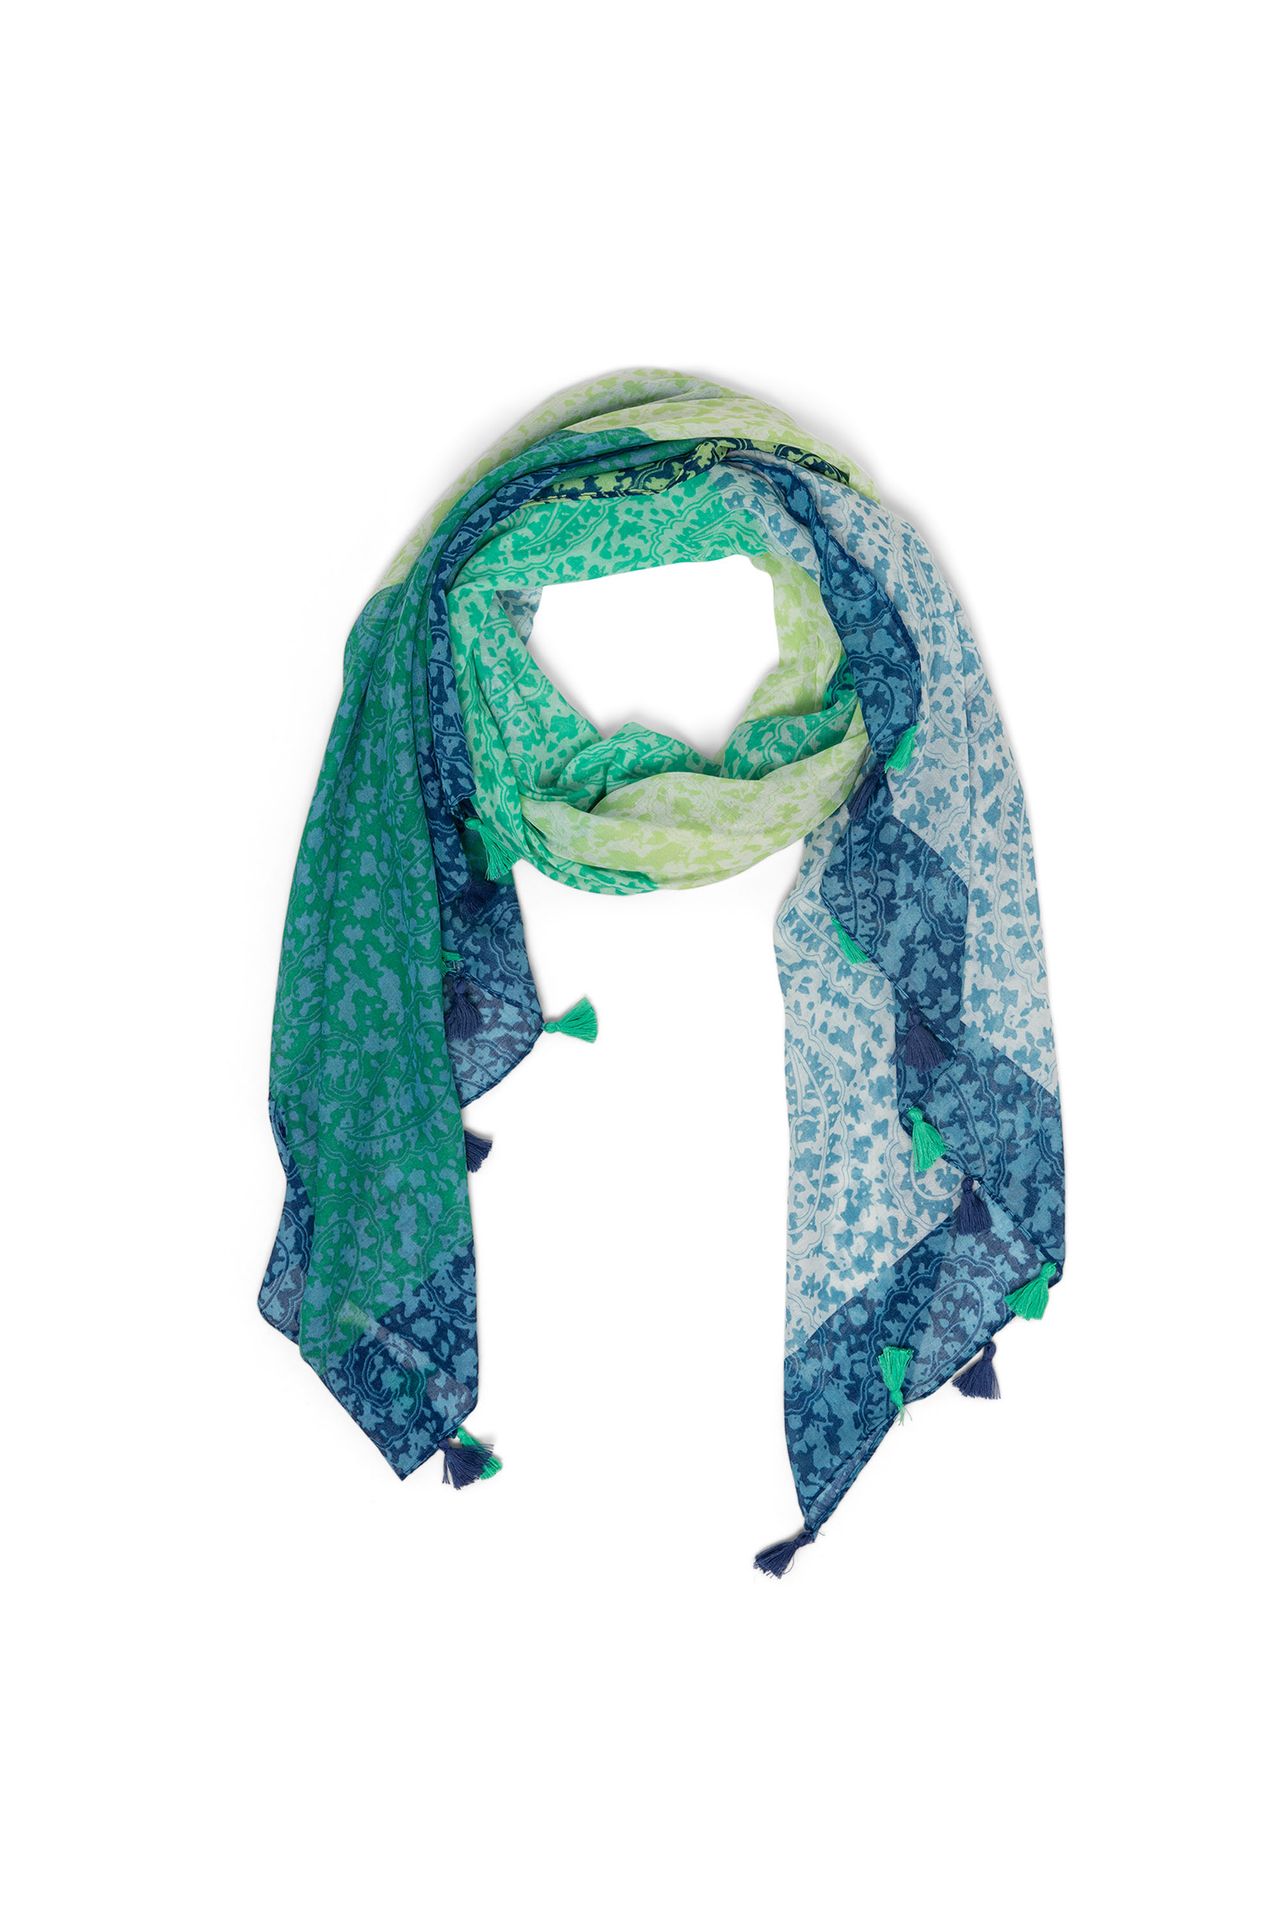 Norah Groen blauwe sjaal met tassels green/blue 213602-534